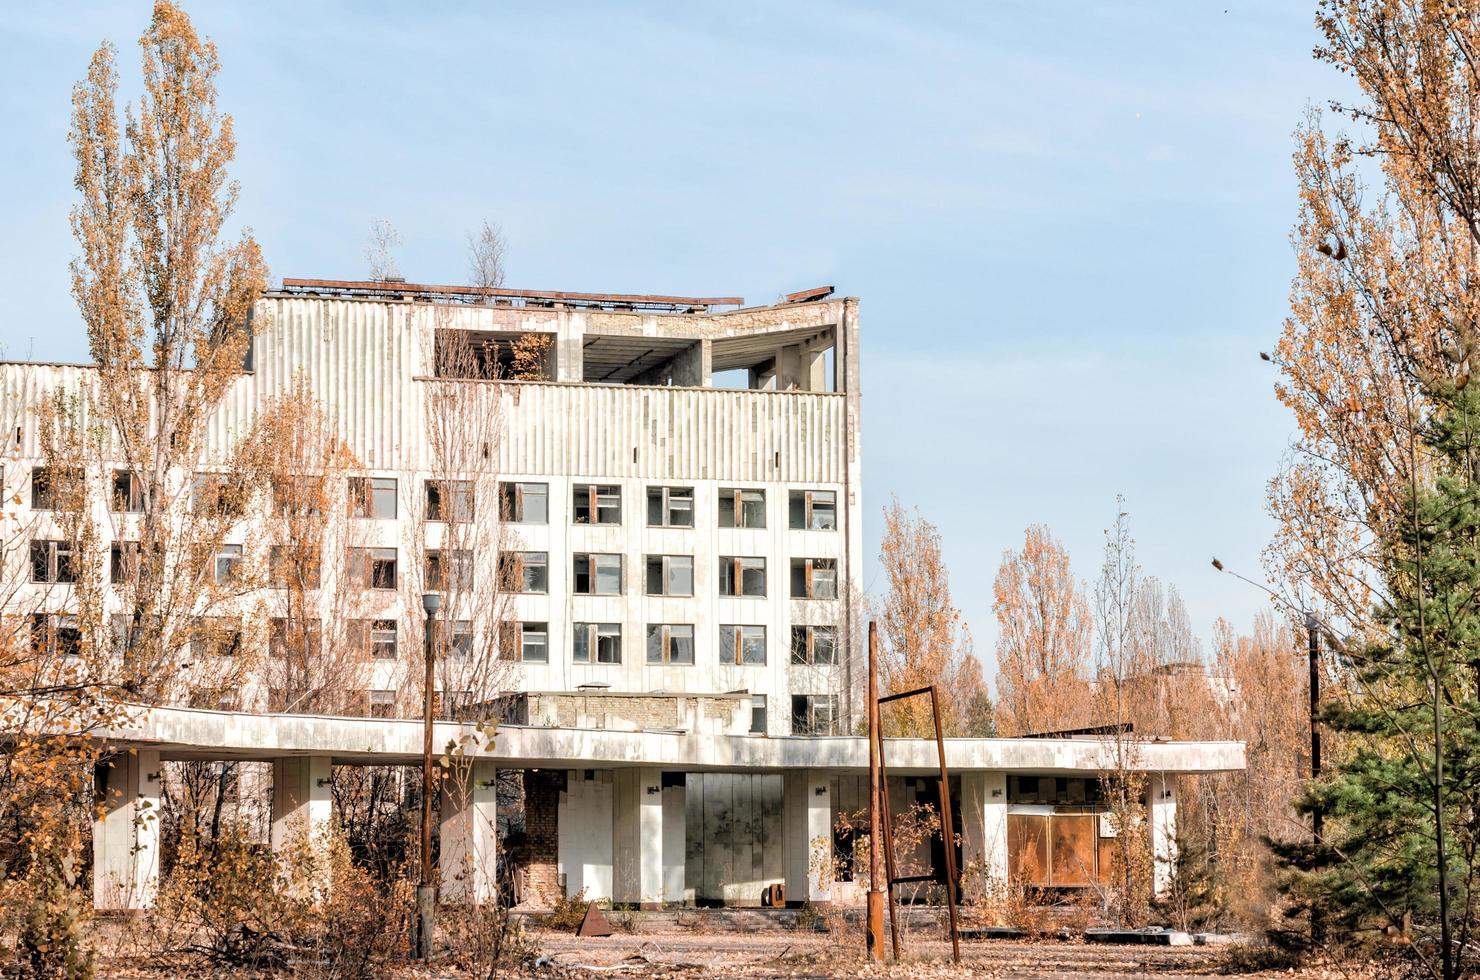 pripyat, Ukraina, 2021 - hotell i Tjernobyl under dagen foto